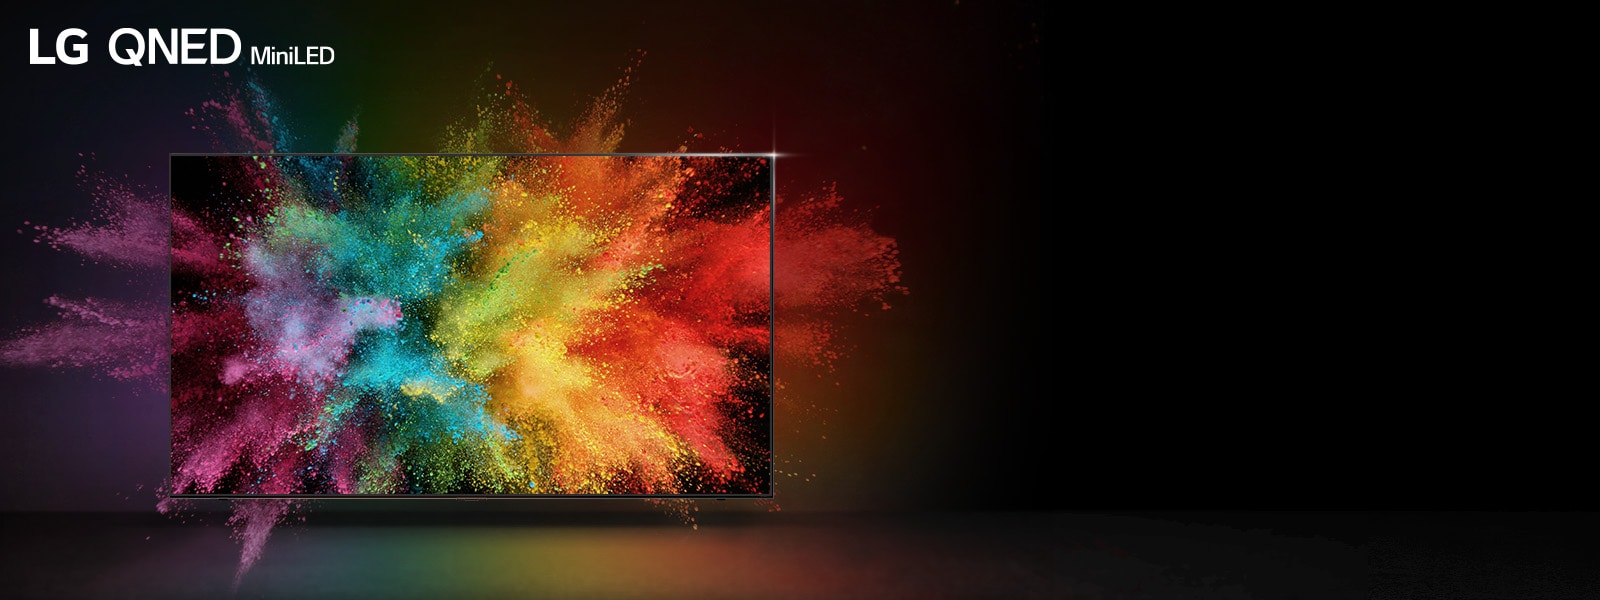 Un LG QNED dans une pièce sombre. Les poudres colorées créent une explosion de couleurs arc-en-ciel sur le téléviseur.